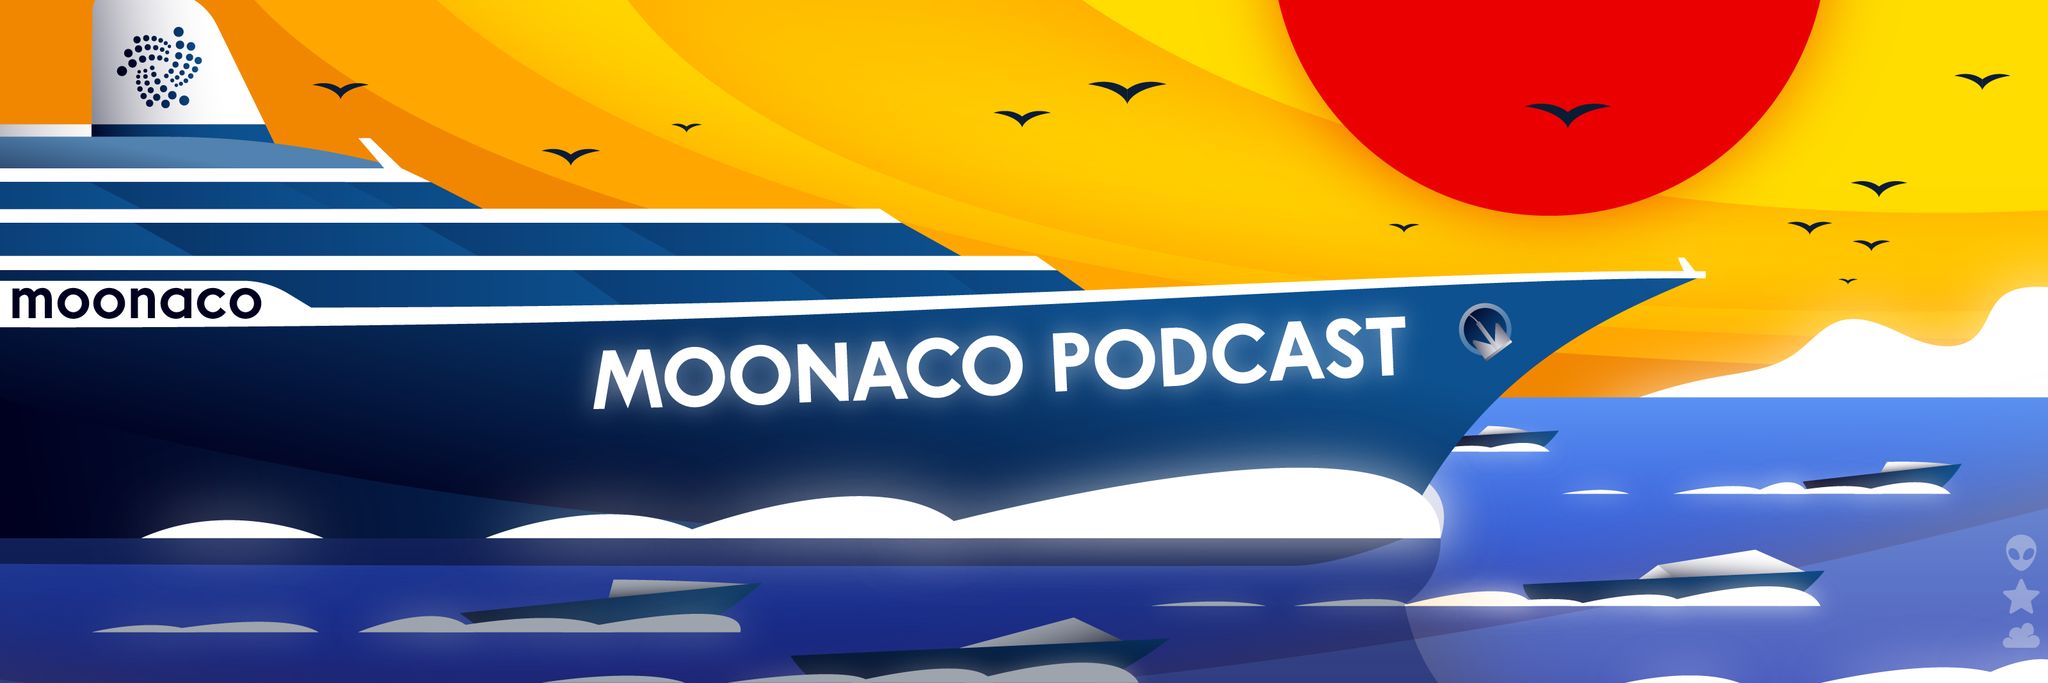 Moonaco_Podcast